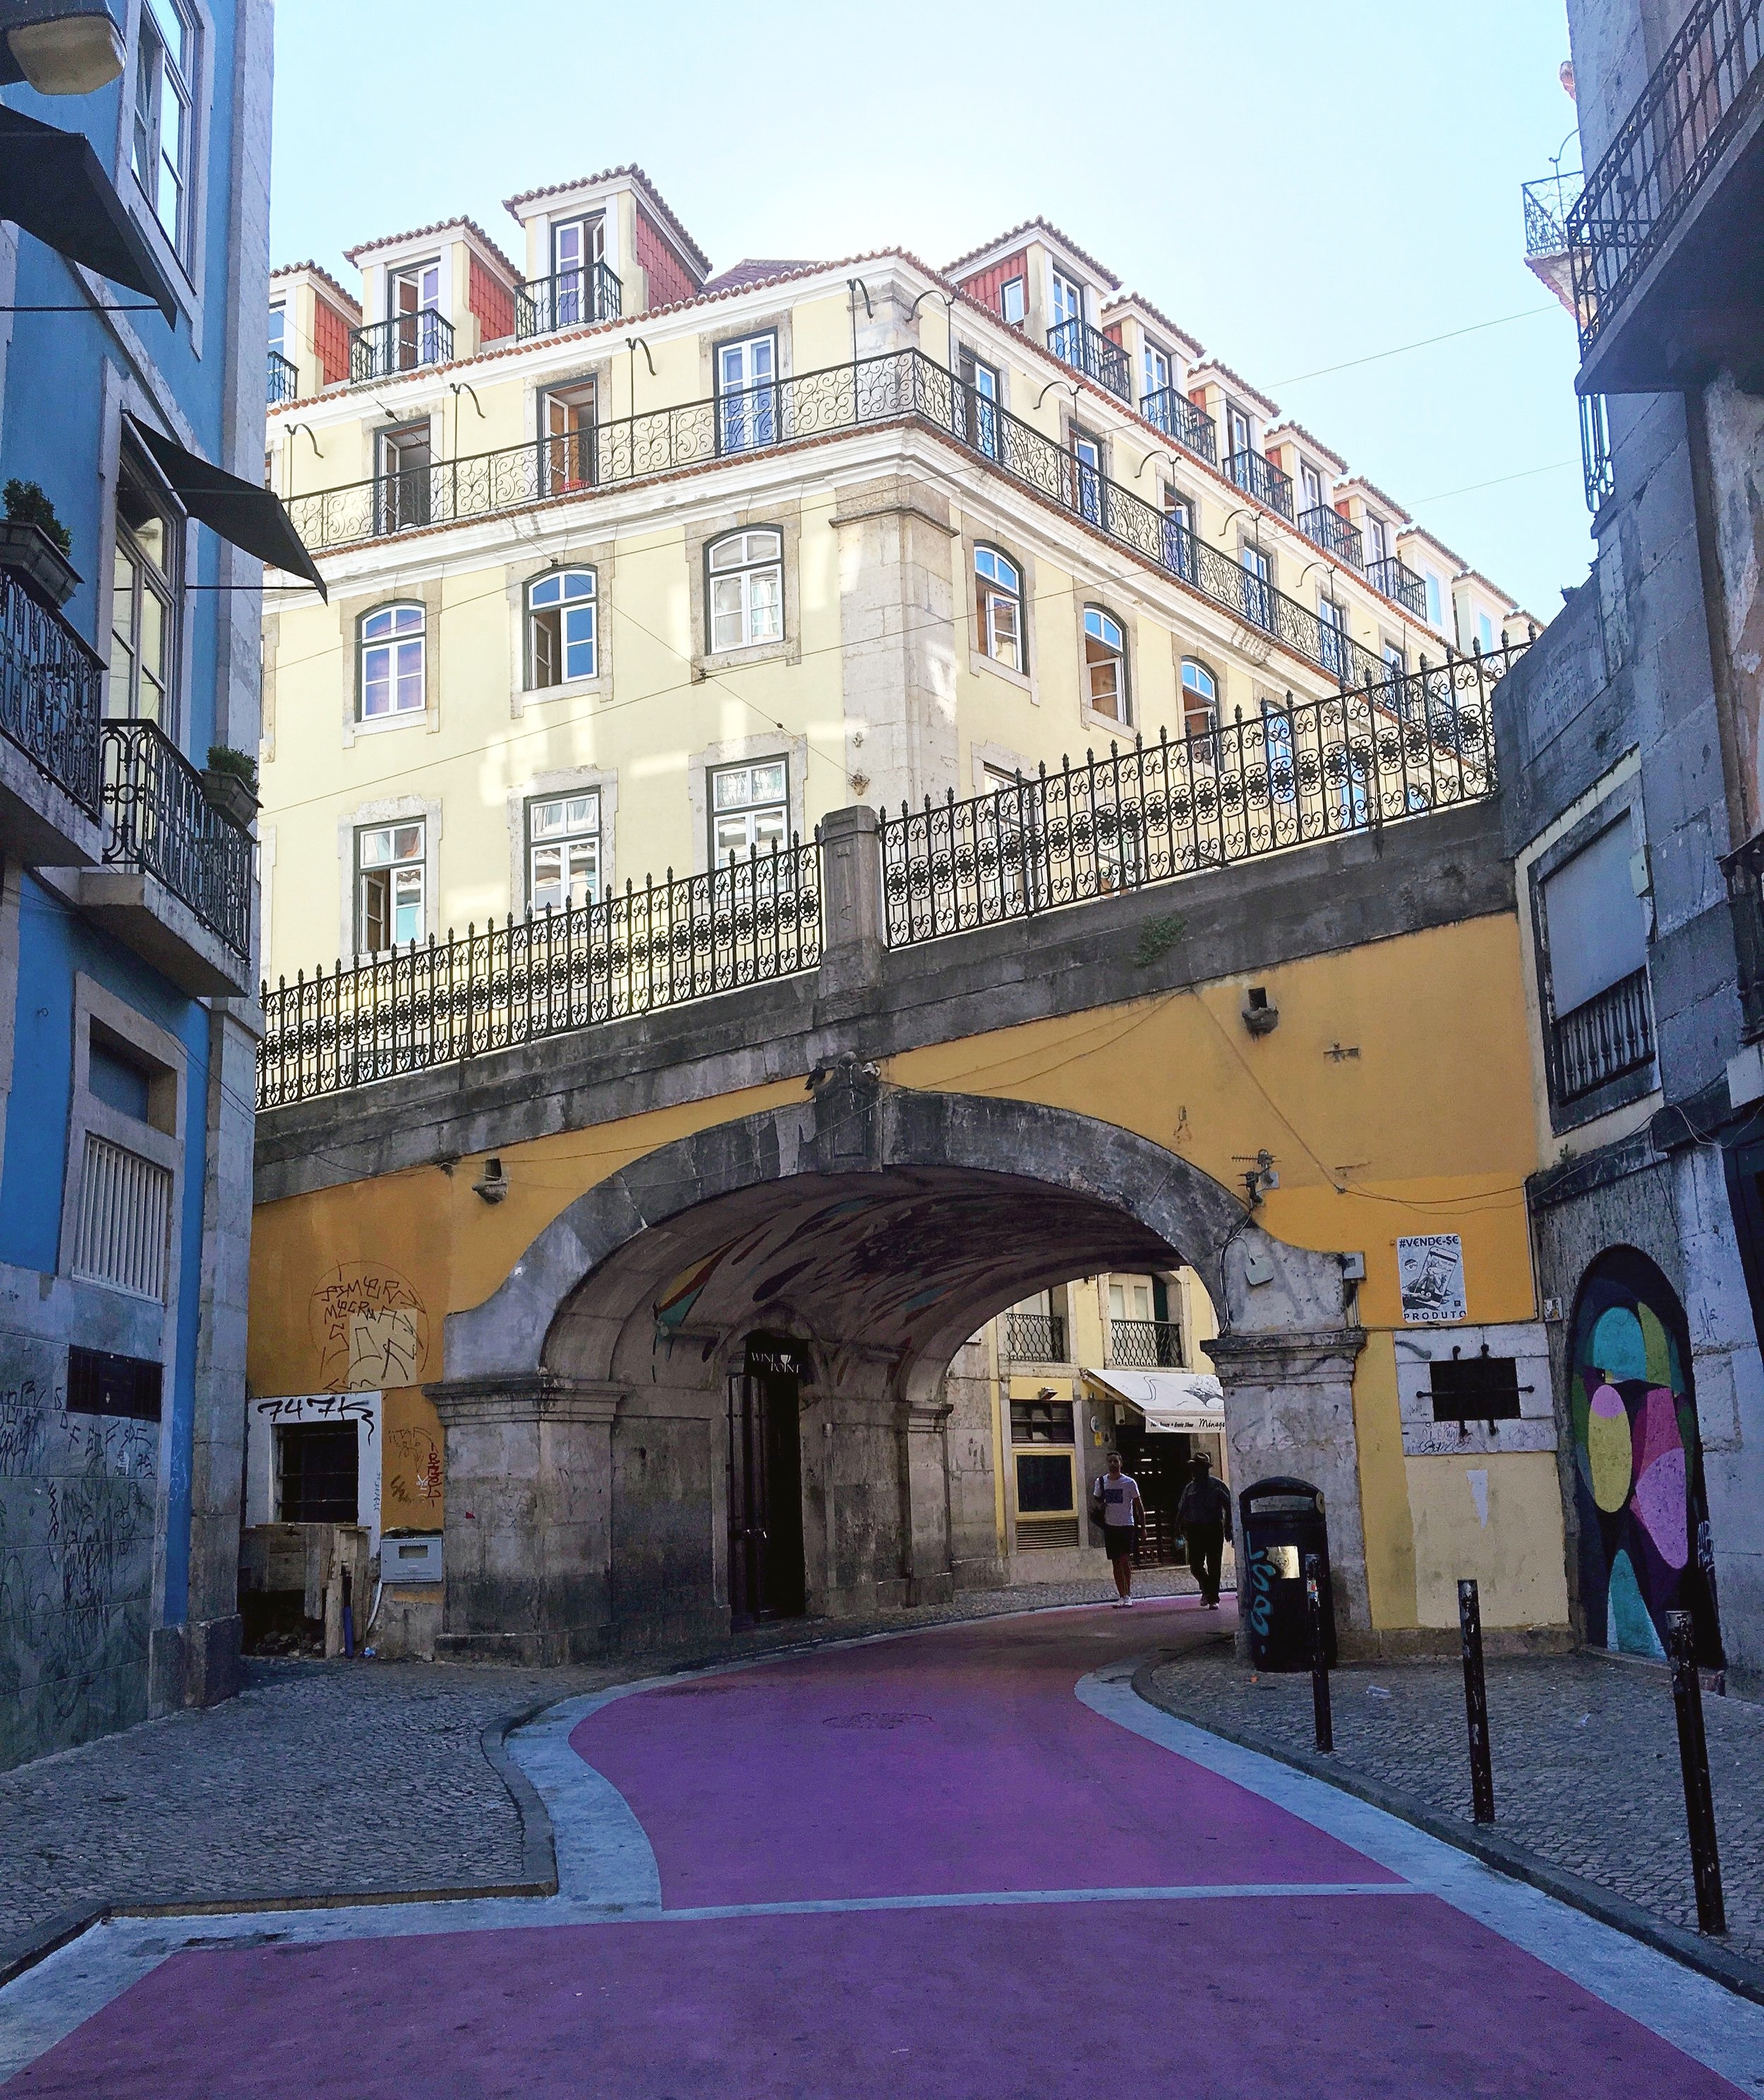 Pink Street, Lisbon